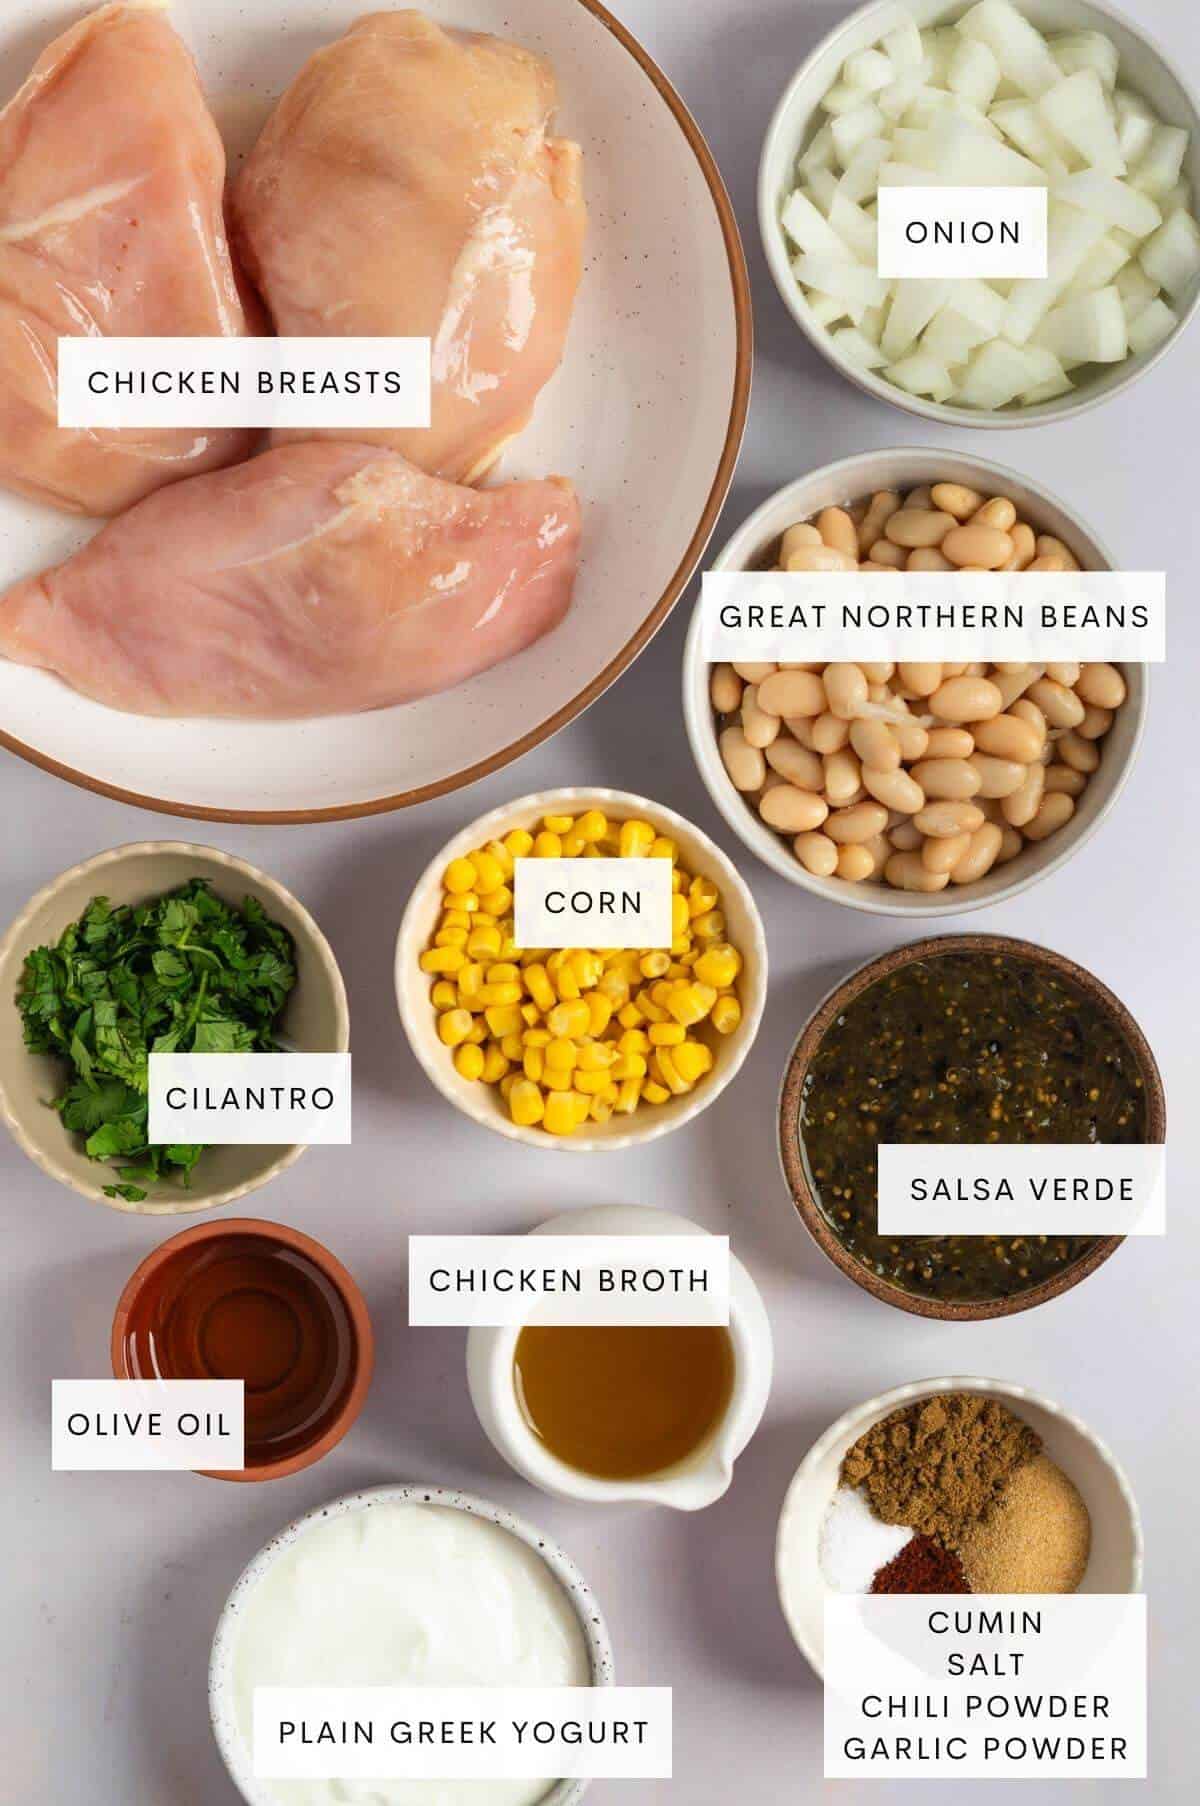 Chicken breasts, onion, great northern beans, corn, cilantro, chicken broth, salsa verde, cumin, salt, chili powder, garlic powder, plain greek yogurt, olive oil, and cilantro.